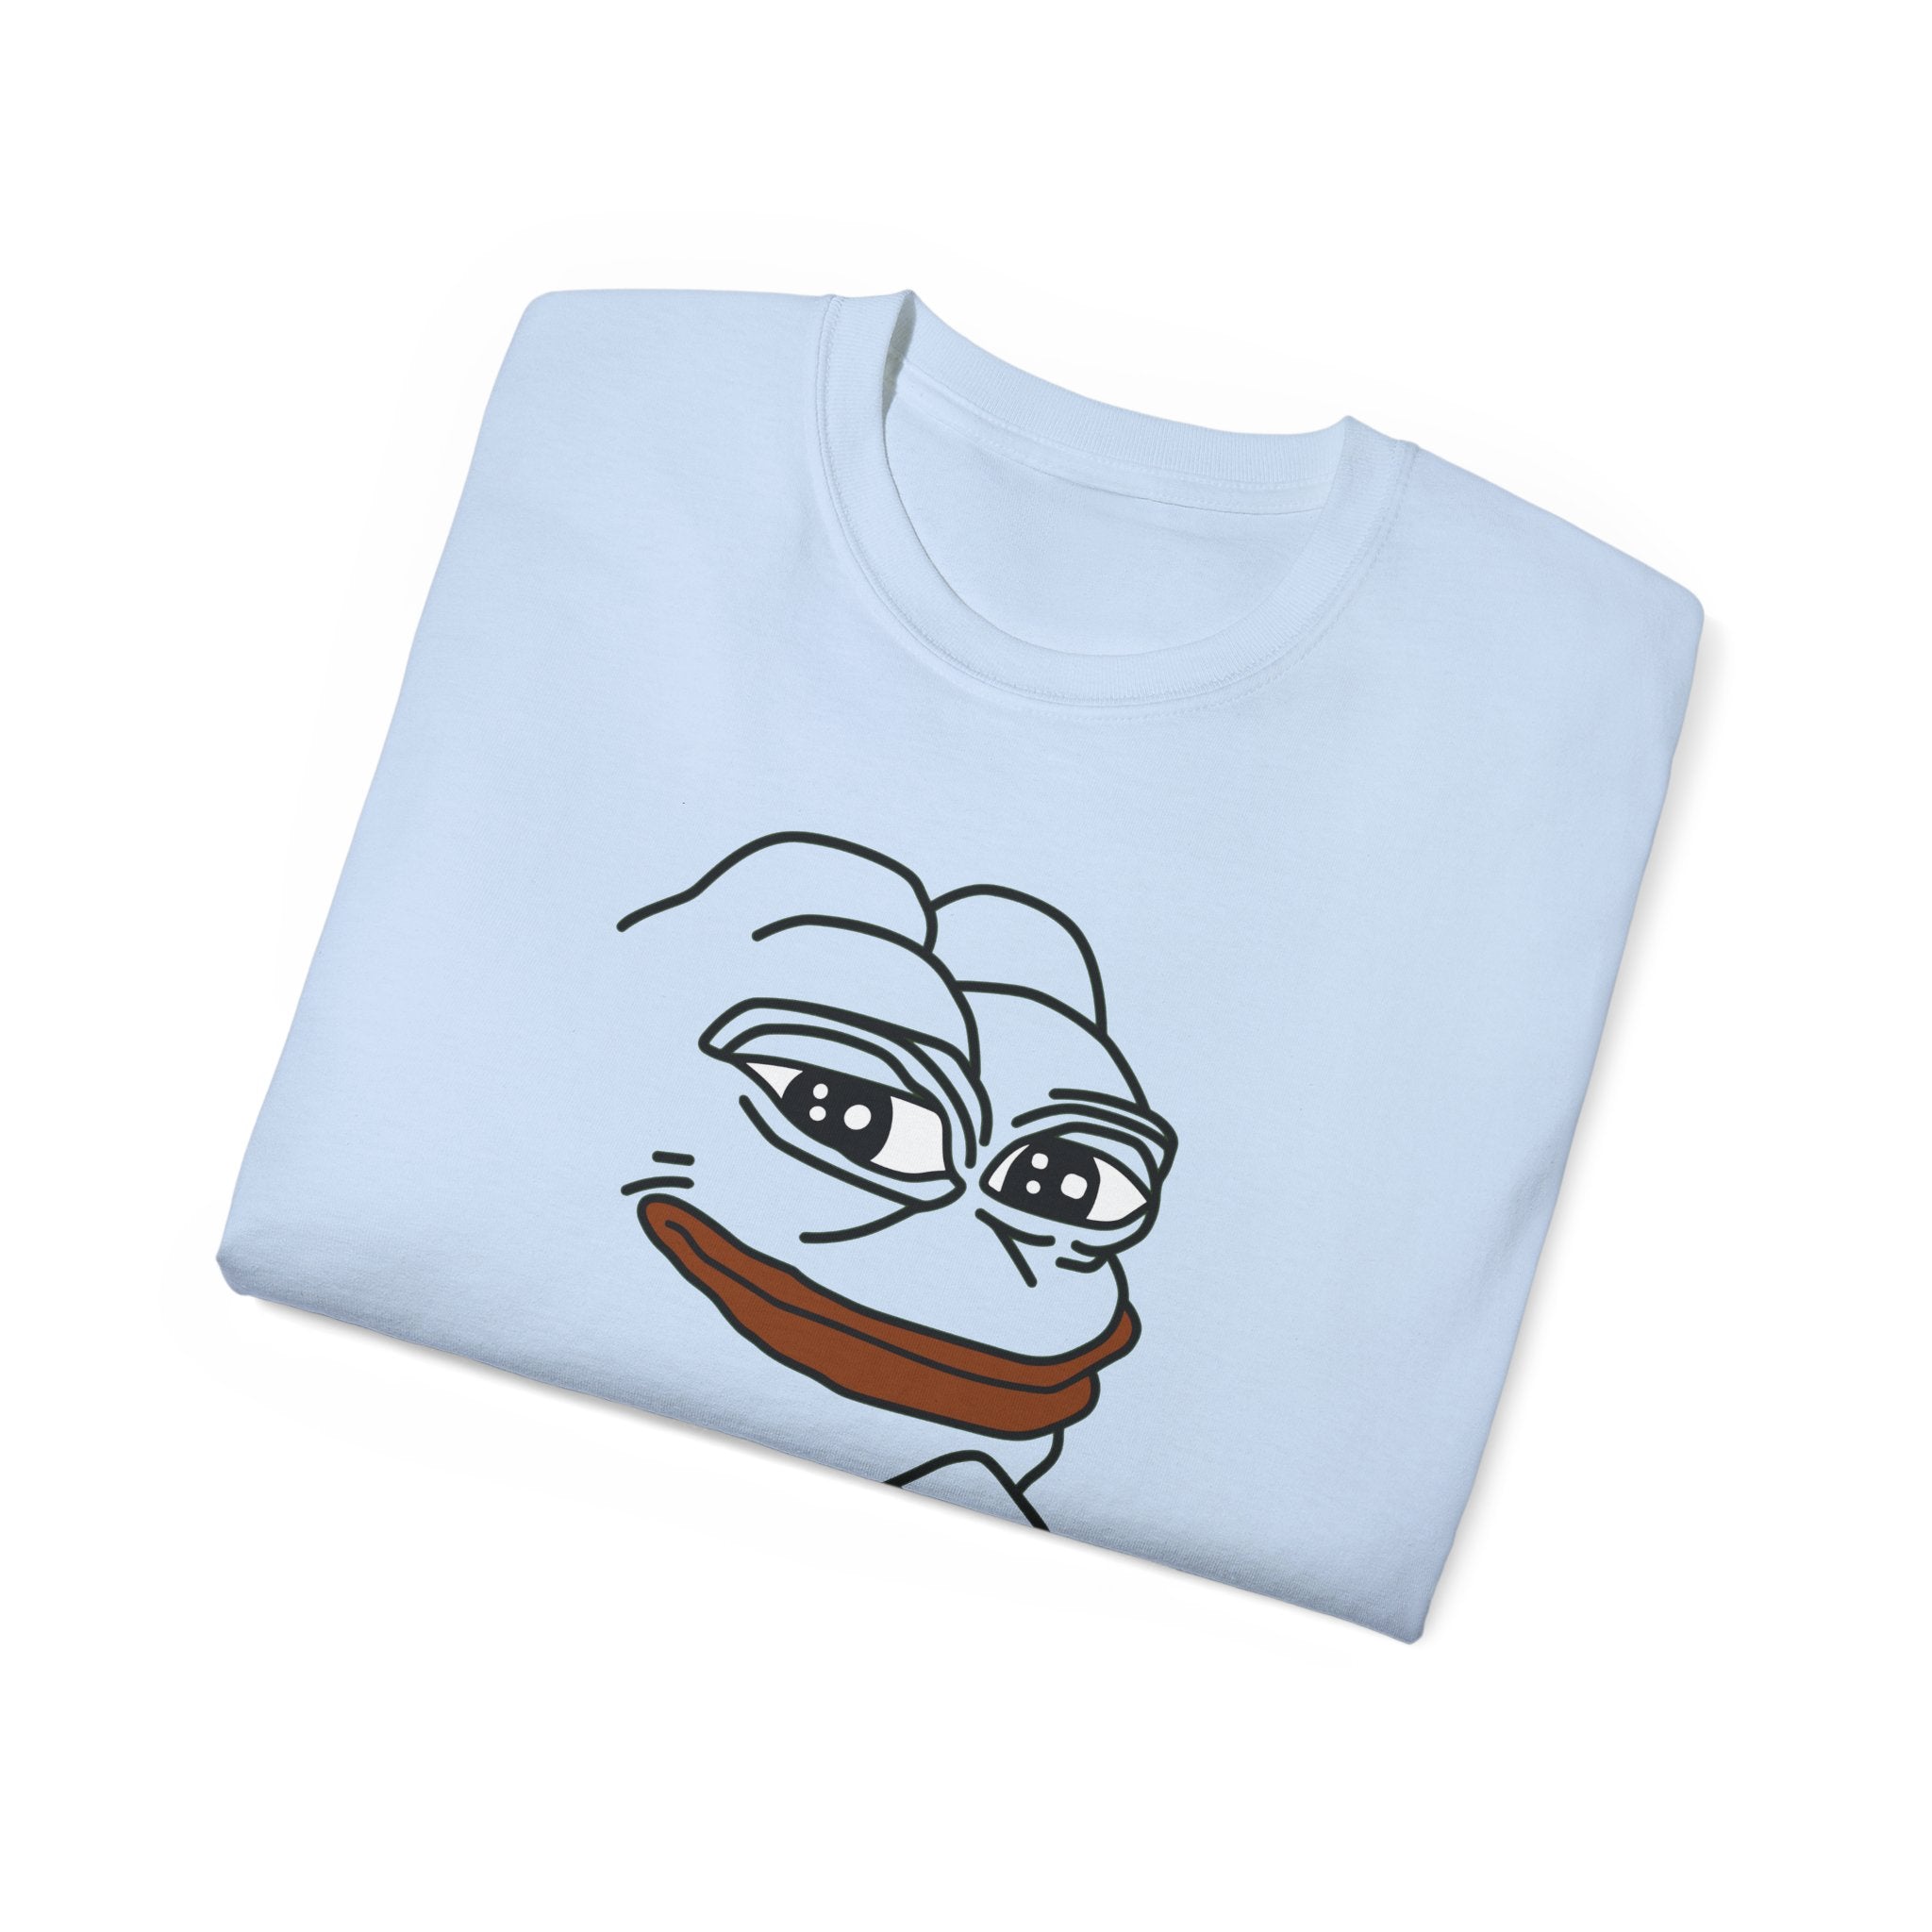 PEPE frog T-Shirt